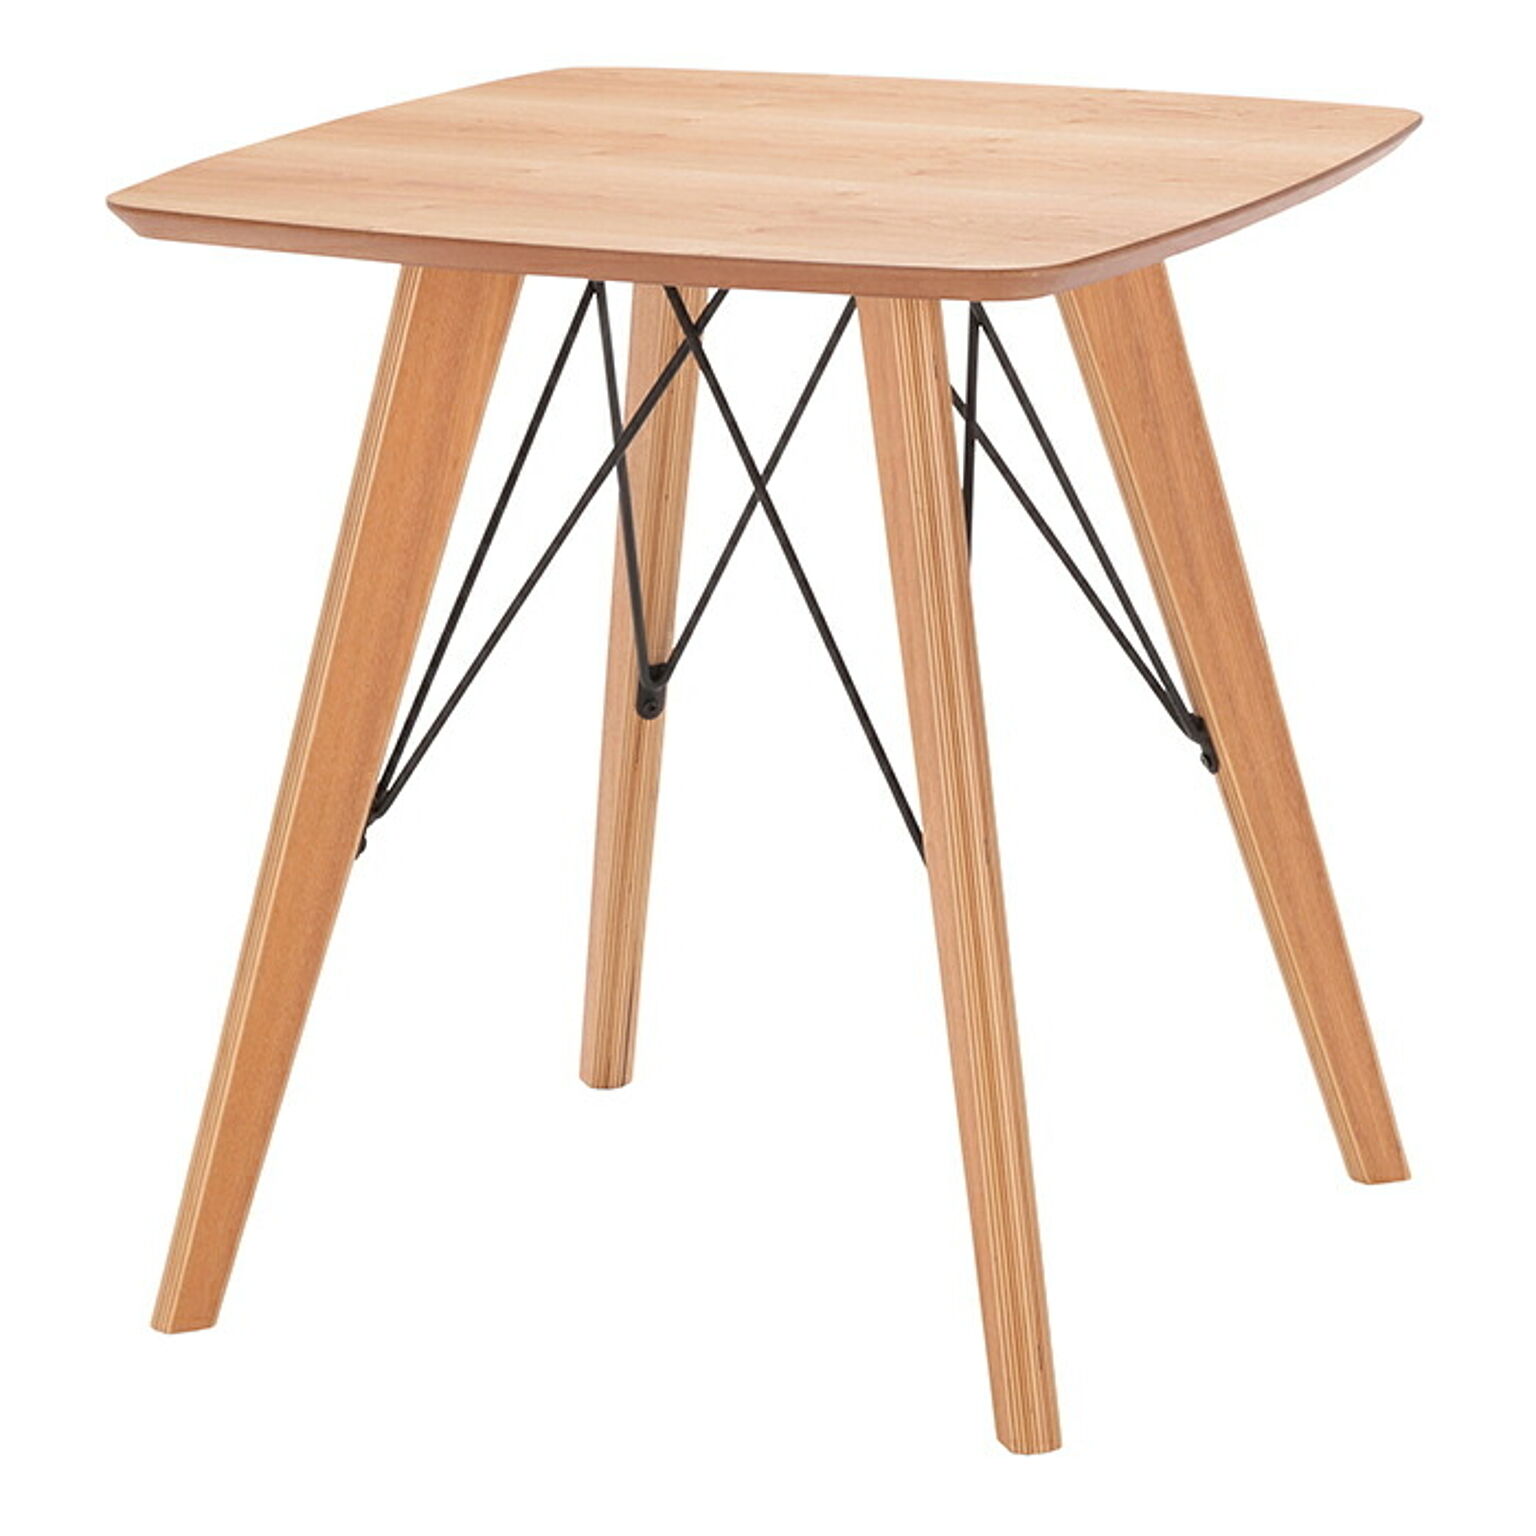 テーブル 組立式 アンテ カフェテーブル 65 幅650x奥行650x高さ690mm あずま工芸